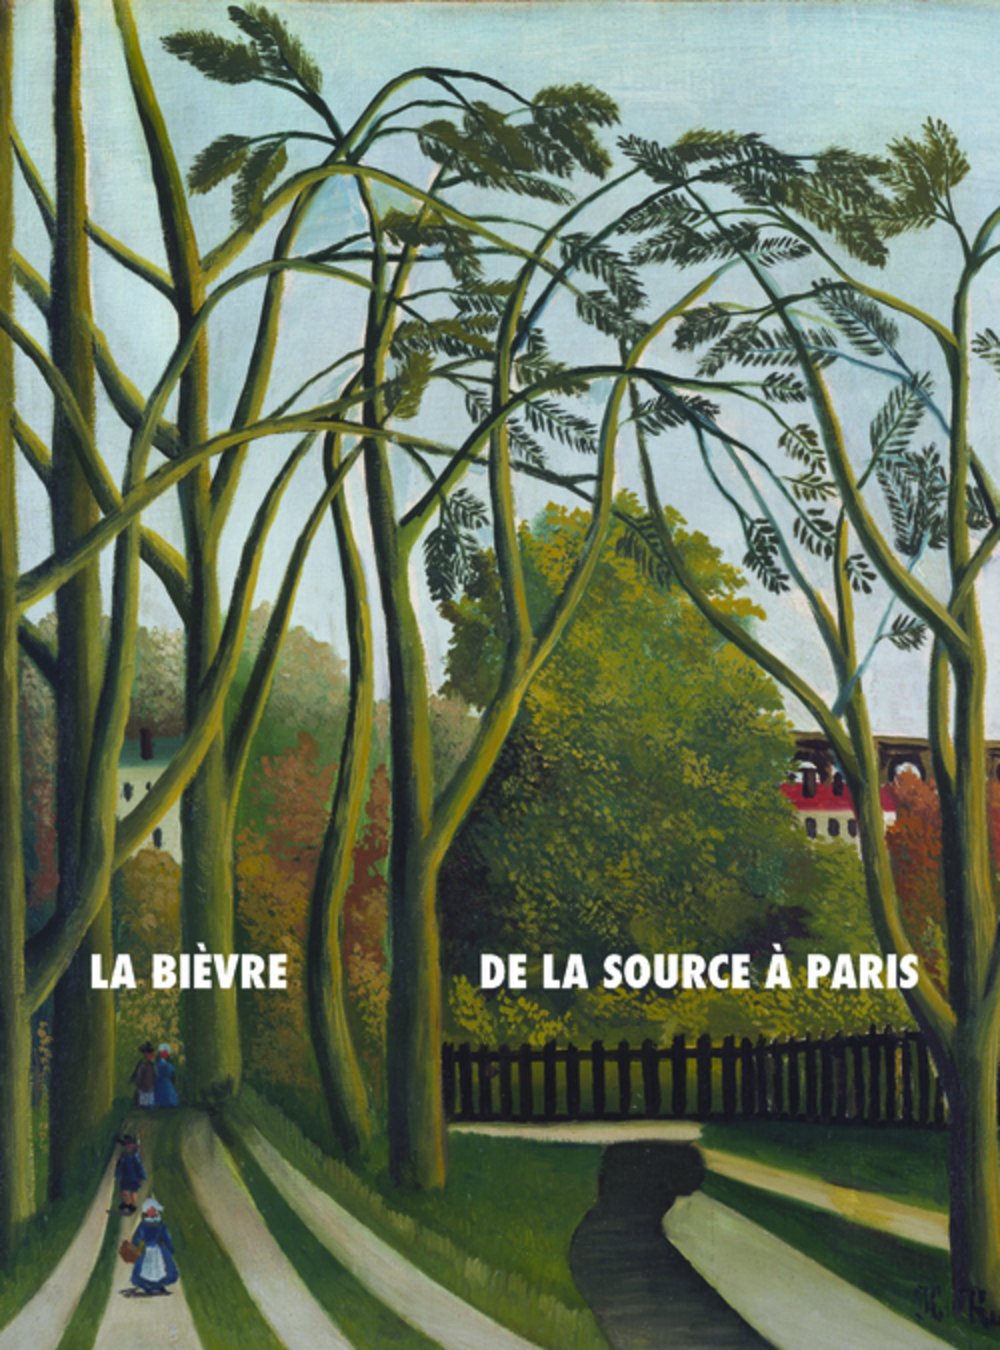 La Bièvre, de la source à Paris. Histoire(s) d'une rivière suburbaine, 2016, 114 p.